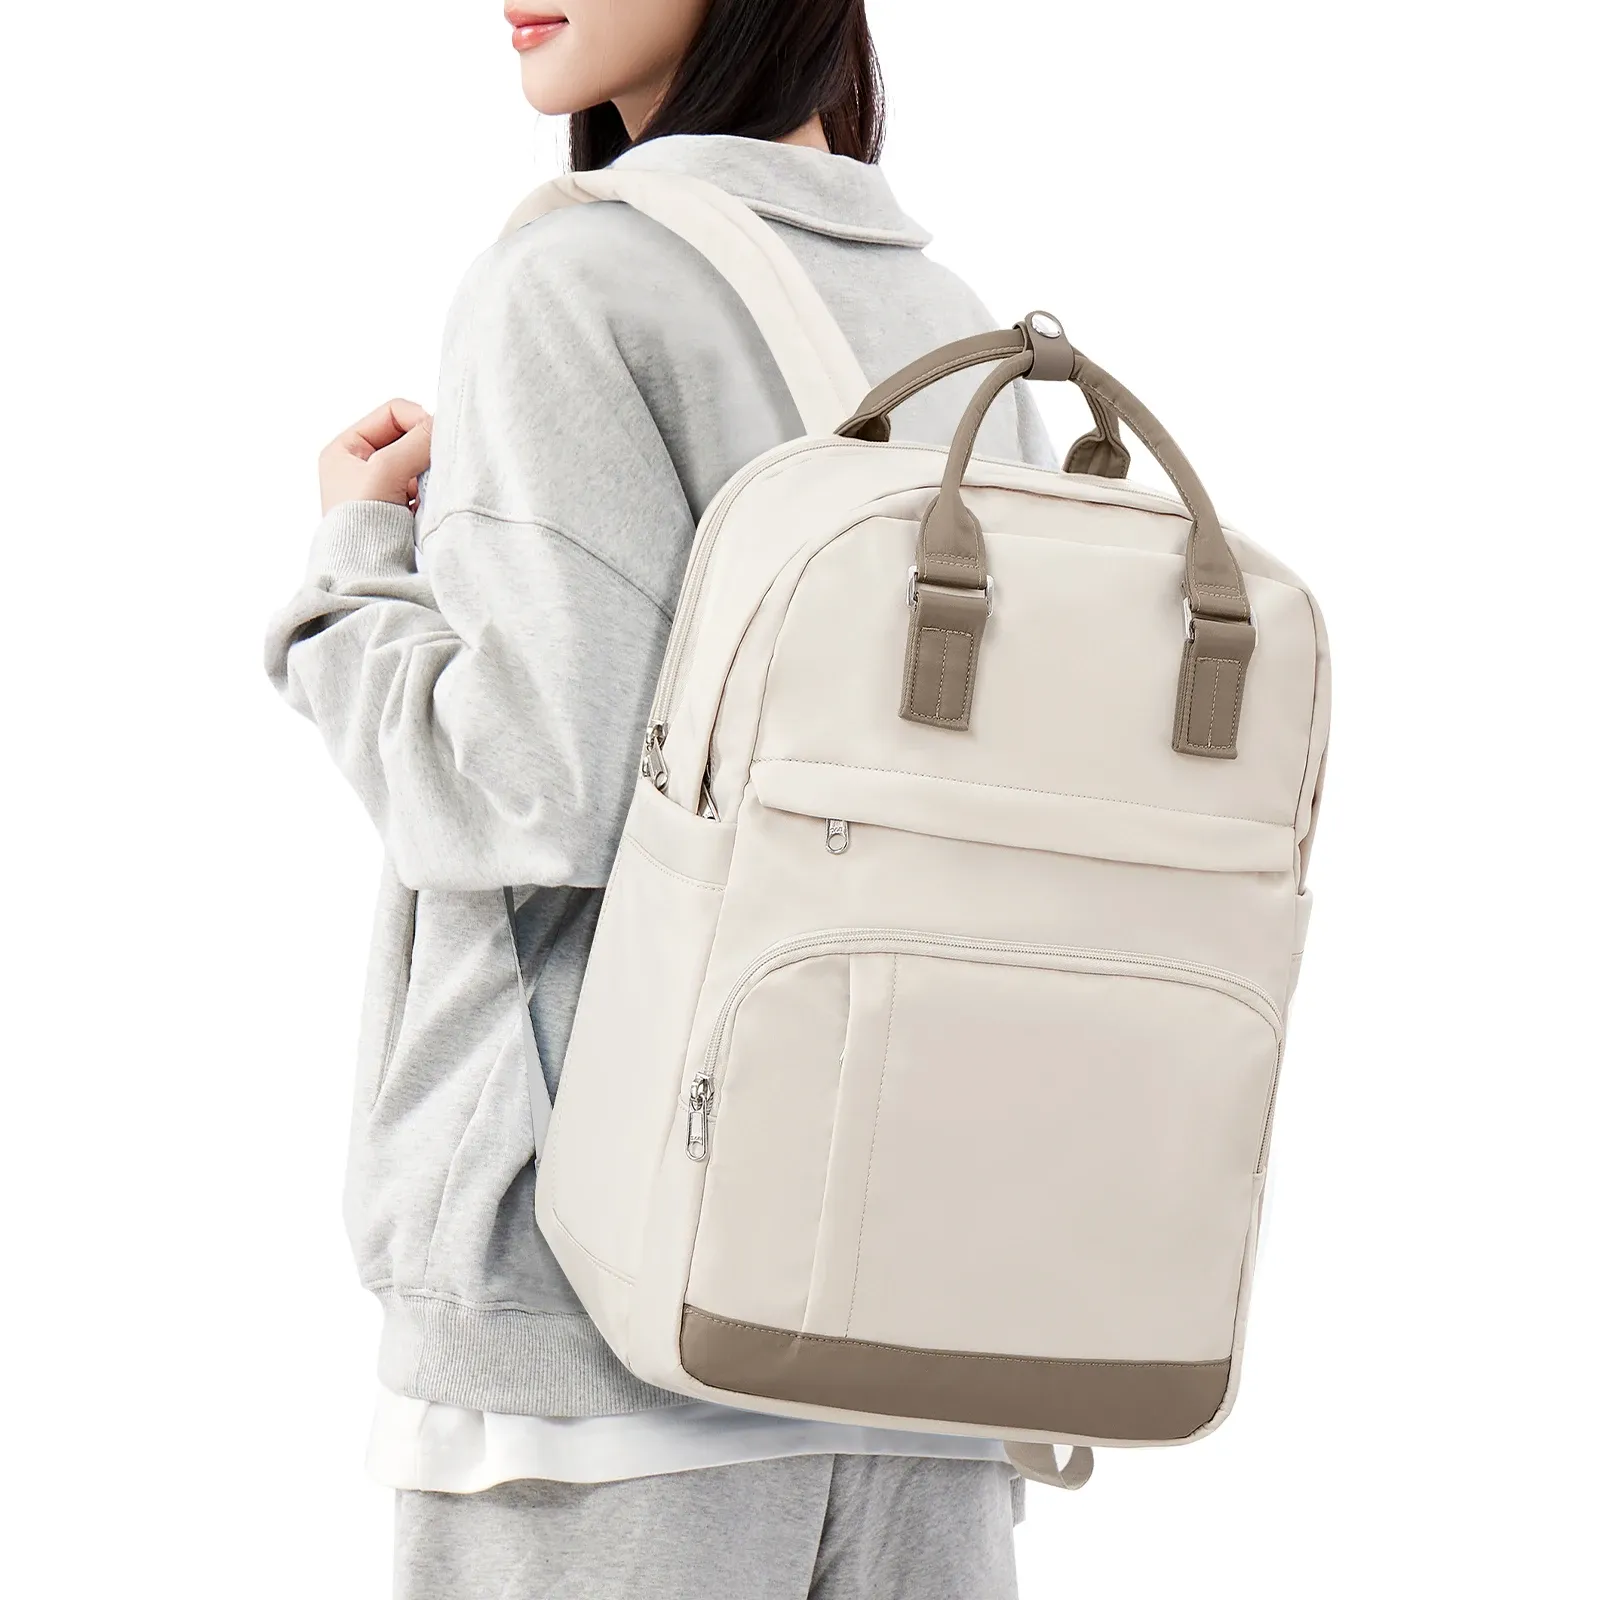 Zaino zaino da zaino da donna da donna casual backpack backpack resistenti all'acqua anti -furto college zaino zaino zaino per lavoro